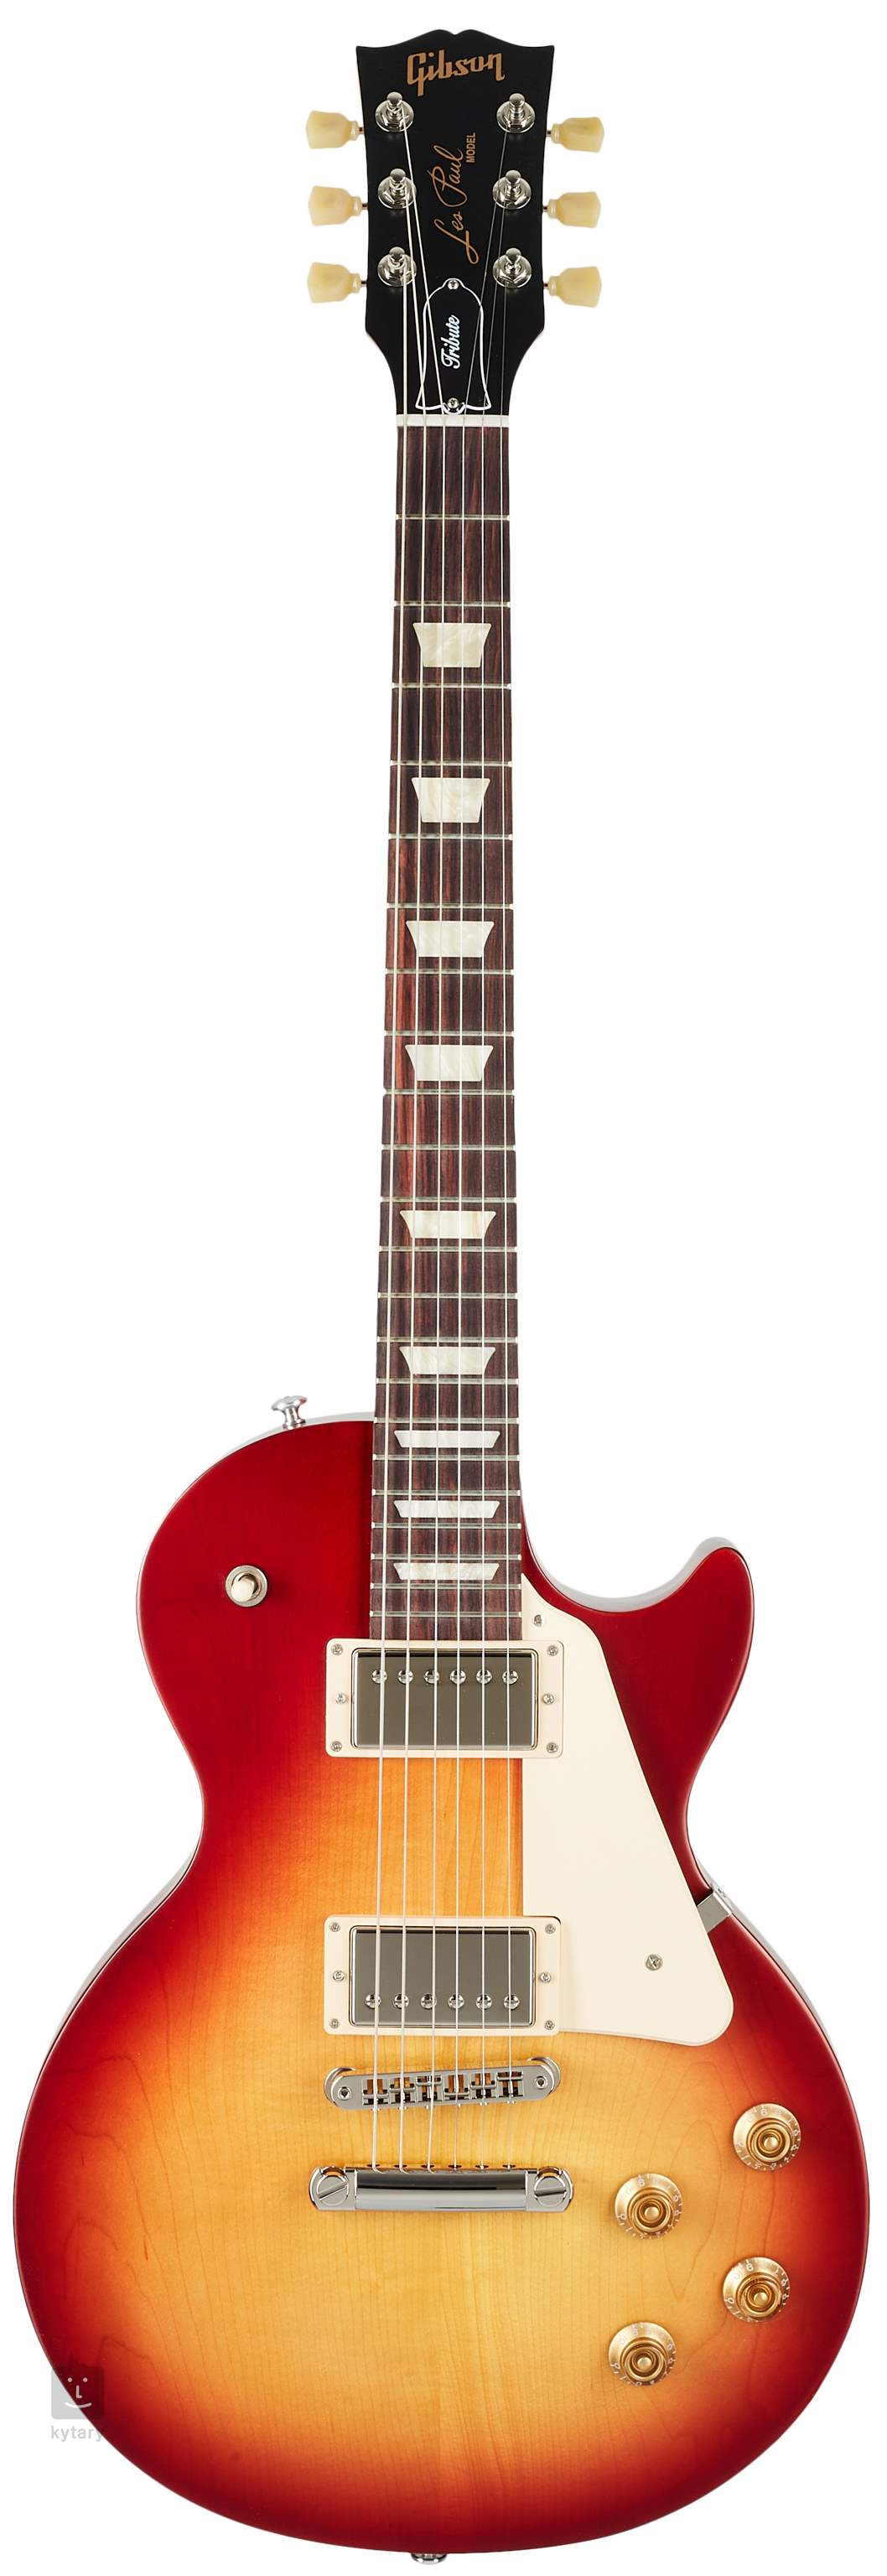 Mysterie Zoek machine optimalisatie Kijkgat GIBSON Les Paul Tribute Satin Cherry Sunburst Elektrische gitaar